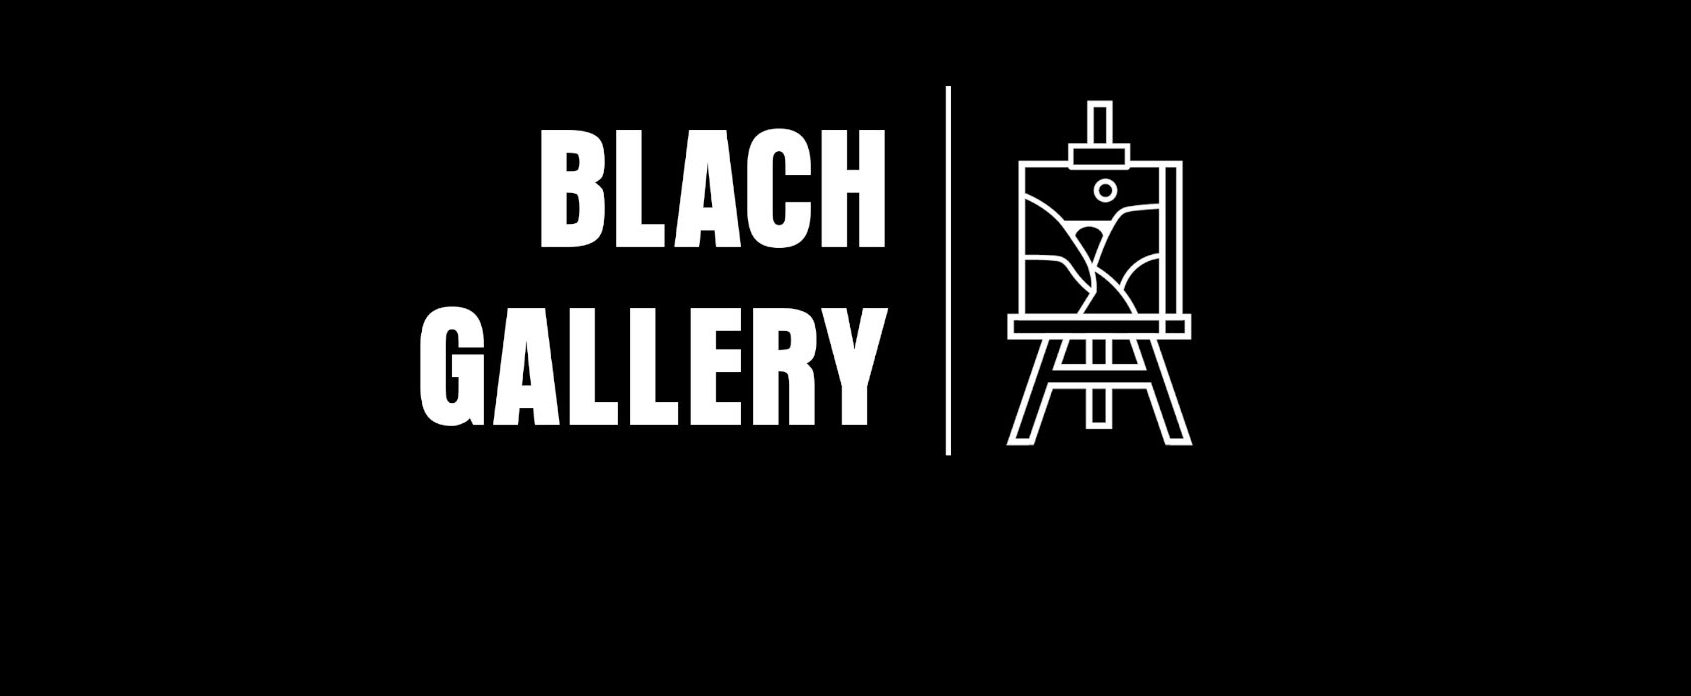 Bienvenue à la Blach Gallery